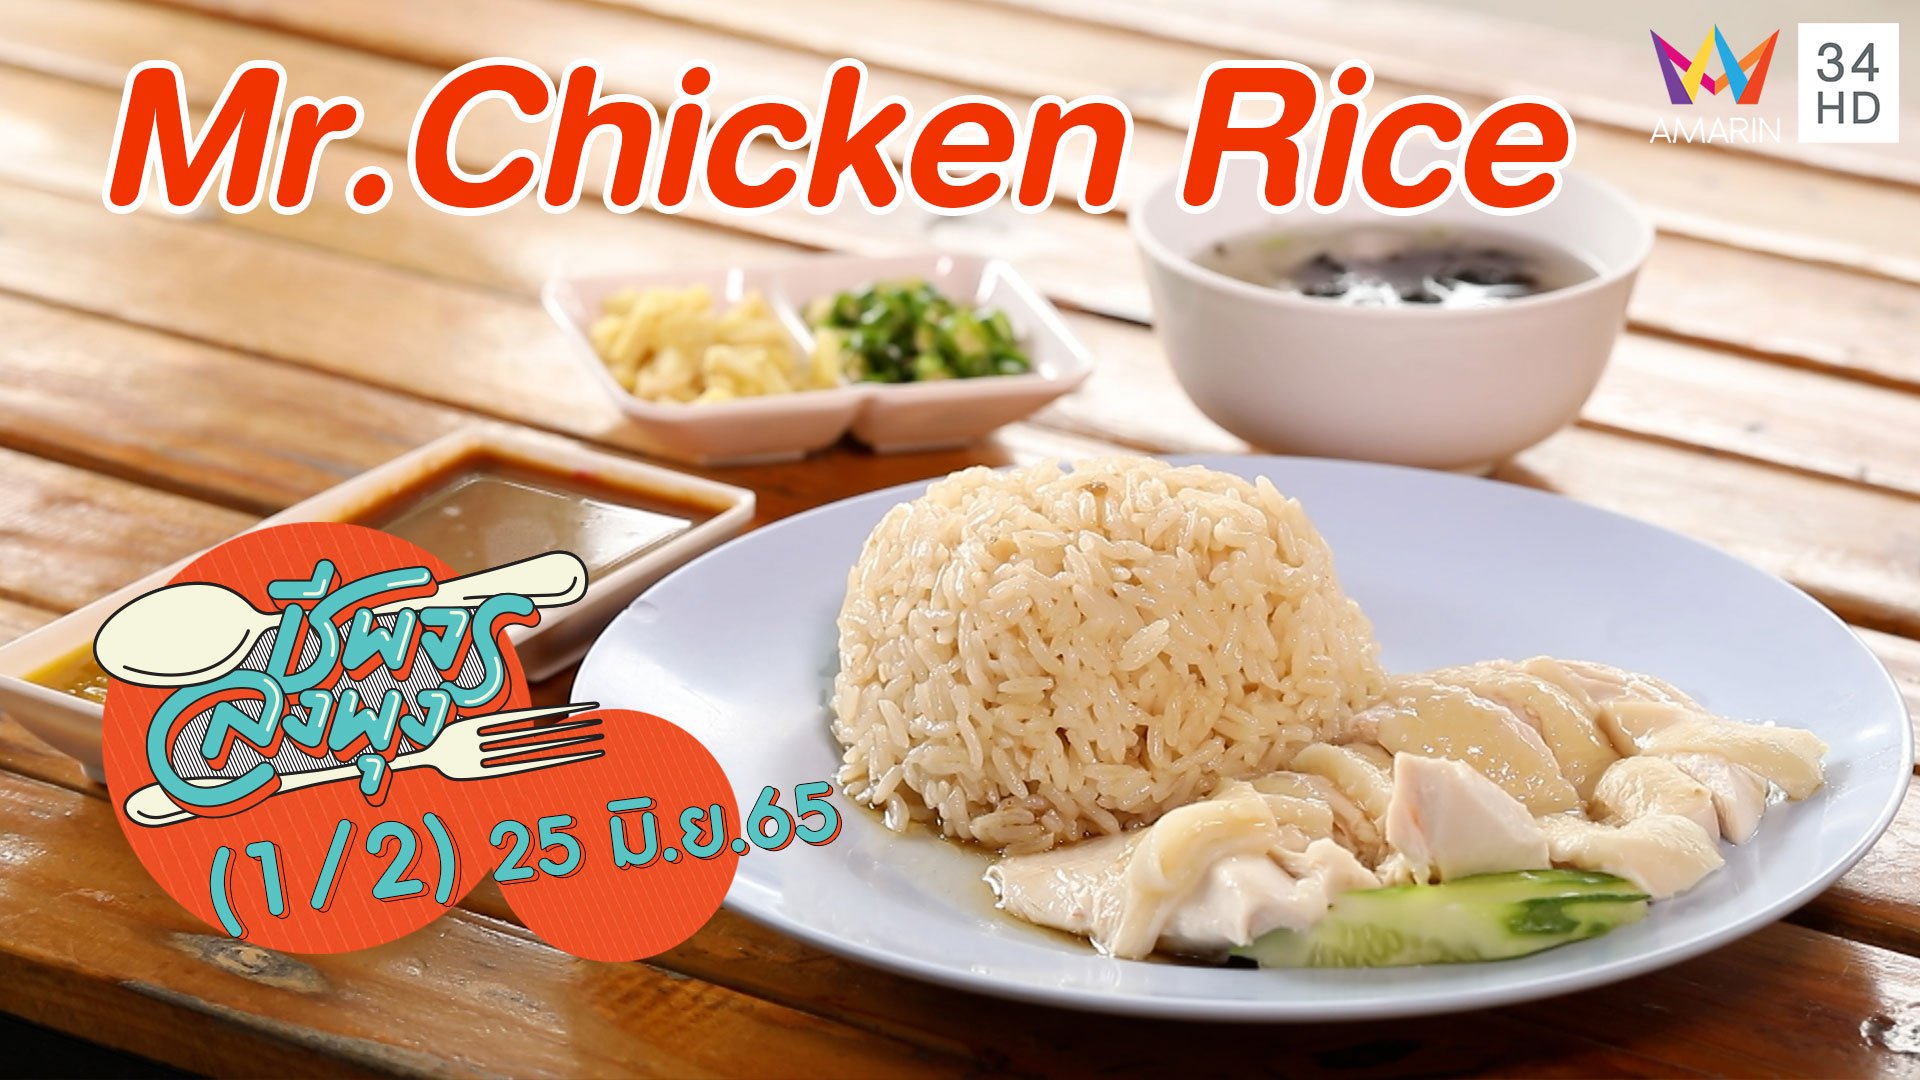 ข้าวมันไก่สูตรเด็ด @ ร้าน Mr.Chicken Rice | ชีพจรลงพุง | 25 มิ.ย. 65 (1/2) | AMARIN TVHD34